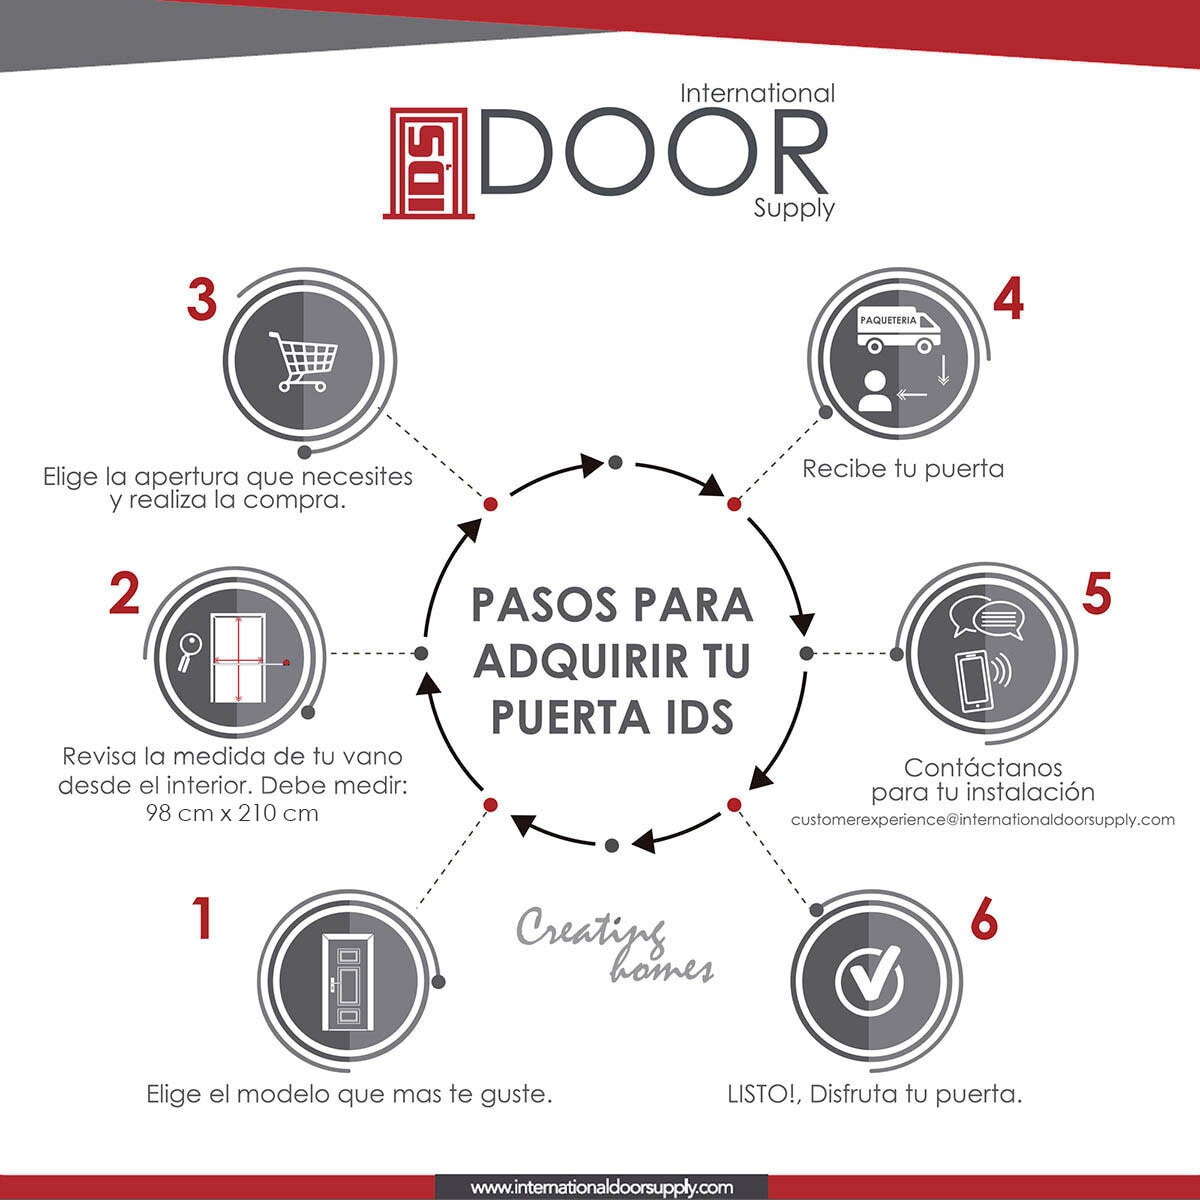 International Door Supply, Celosía Corrediza Pedregal